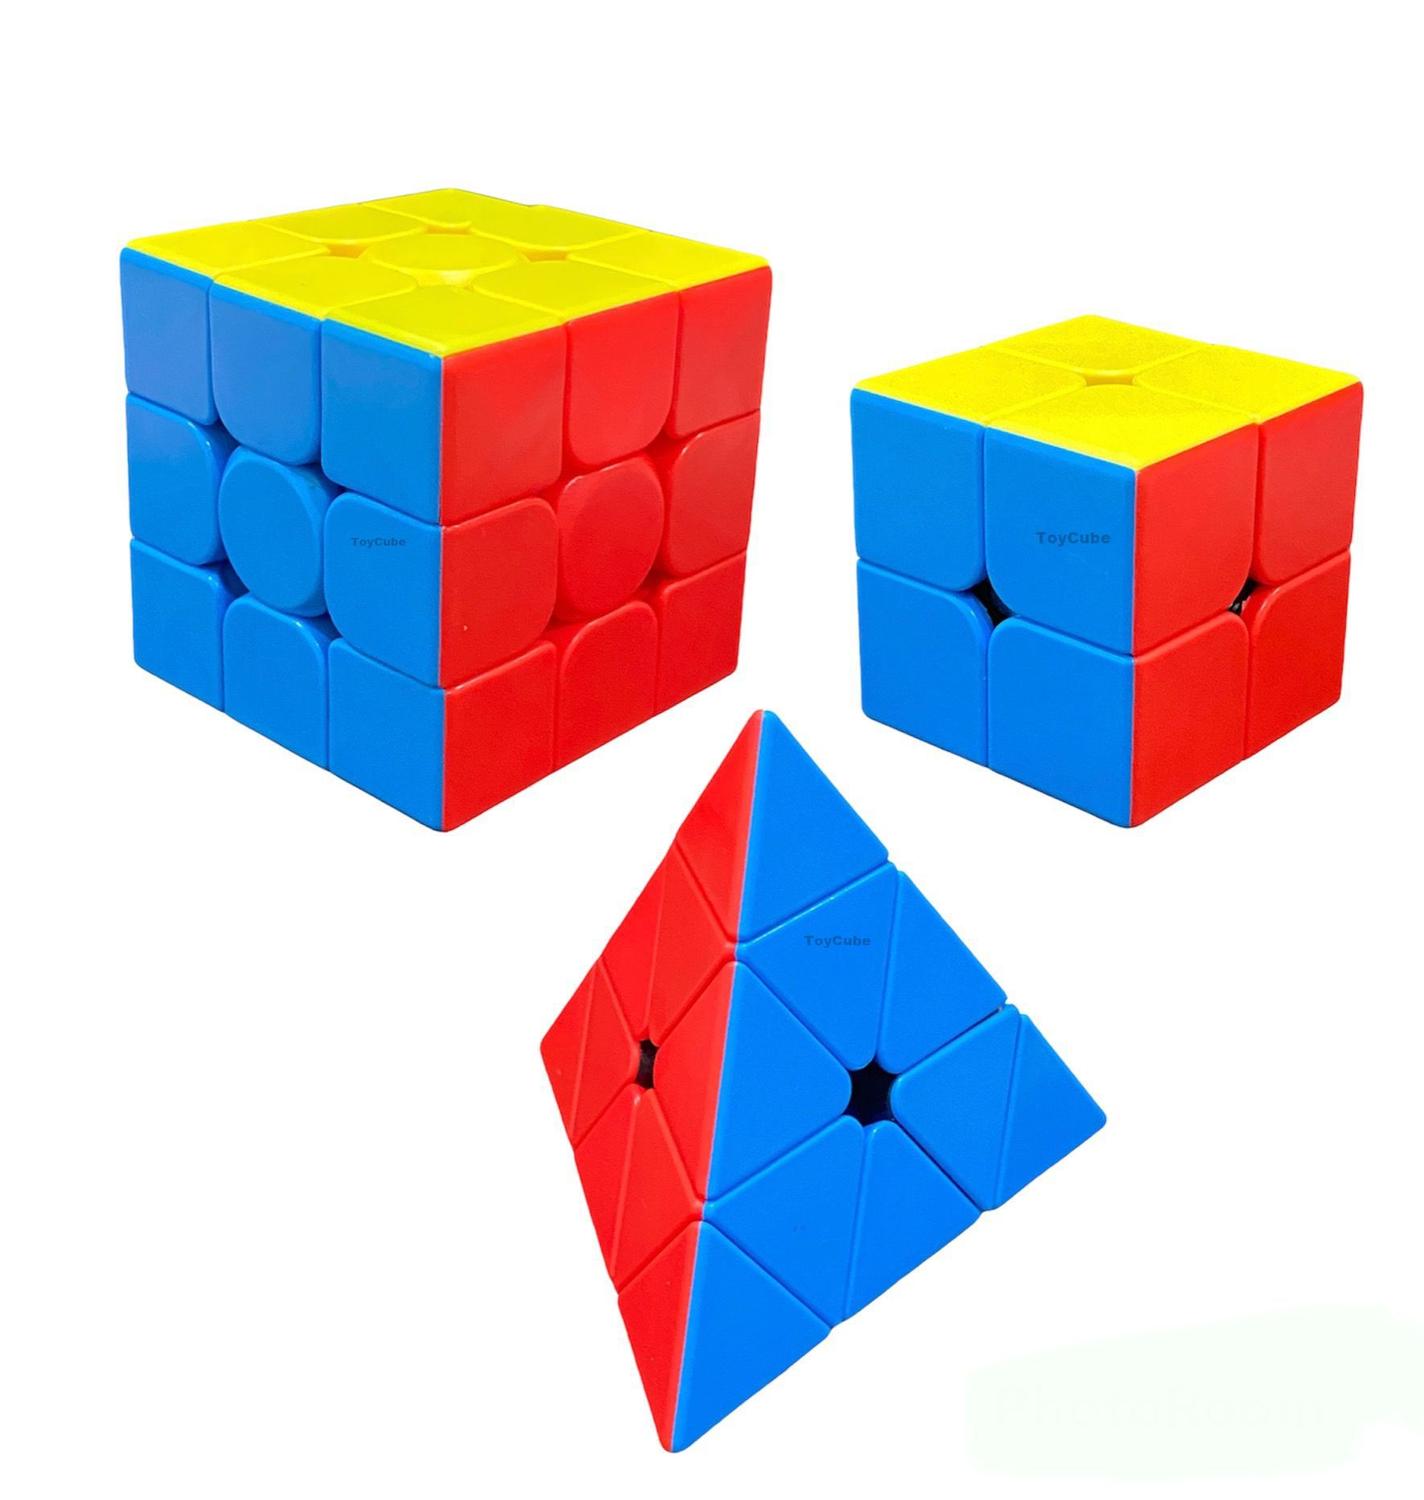 Kit 3 Cubo Mágico 2x2x2+3x3x3+pirâmide Profissional Moyu - Cubo 